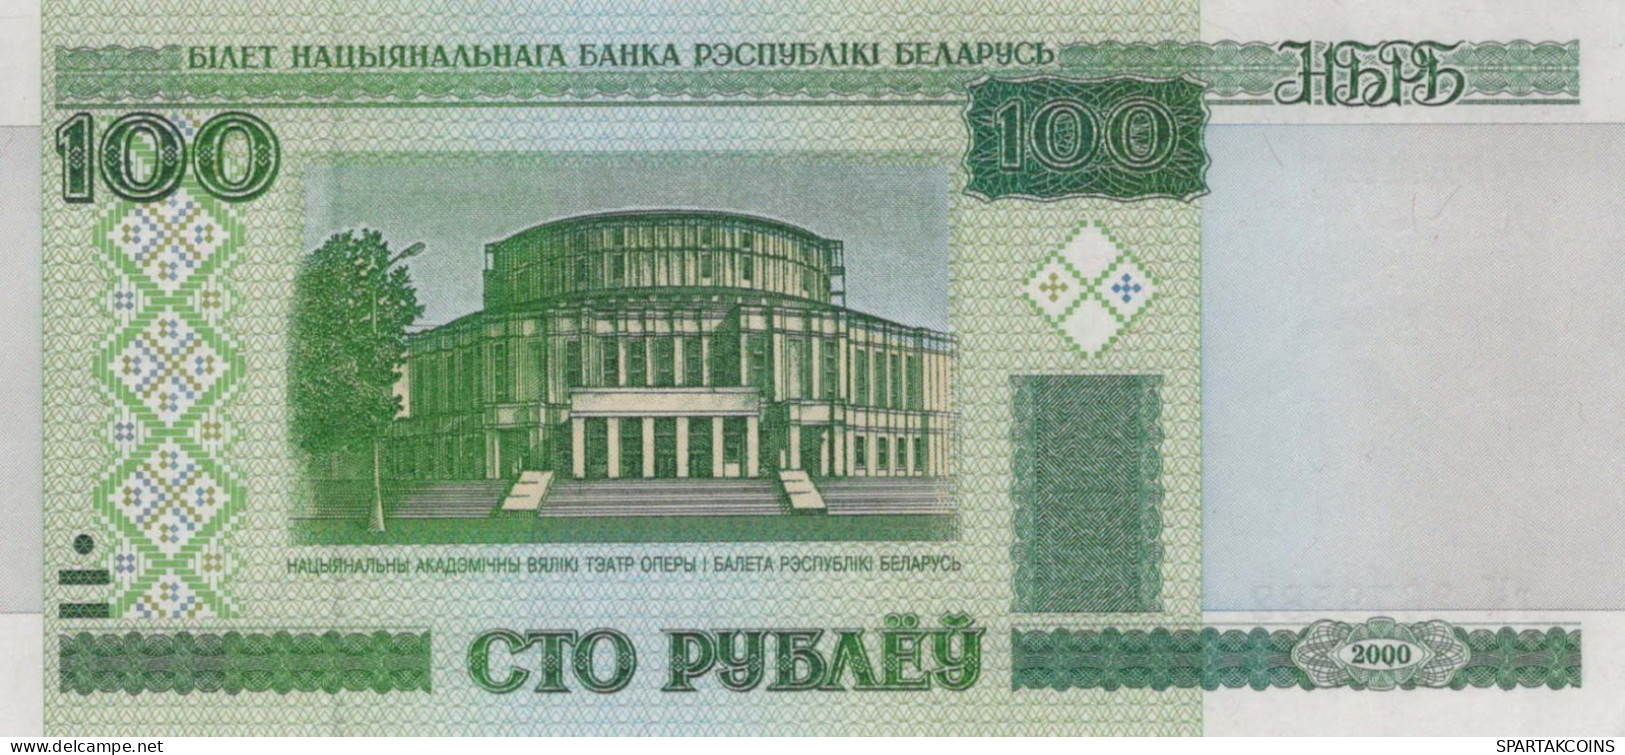 100 RUBLES 2000 BELARUS Papiergeld Banknote #PJ304 - [11] Lokale Uitgaven